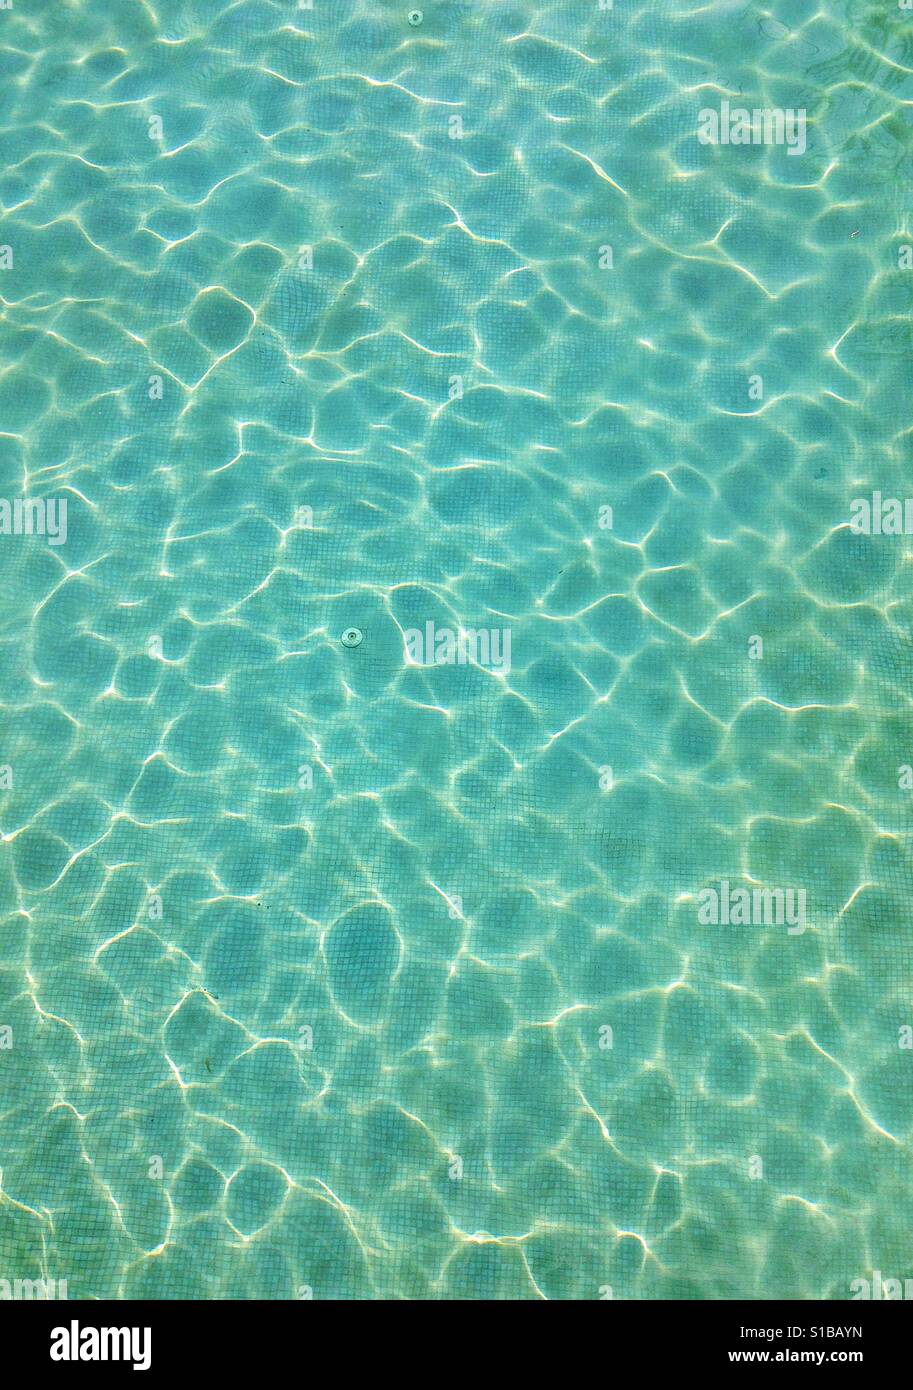 Water pattern Stock Photo